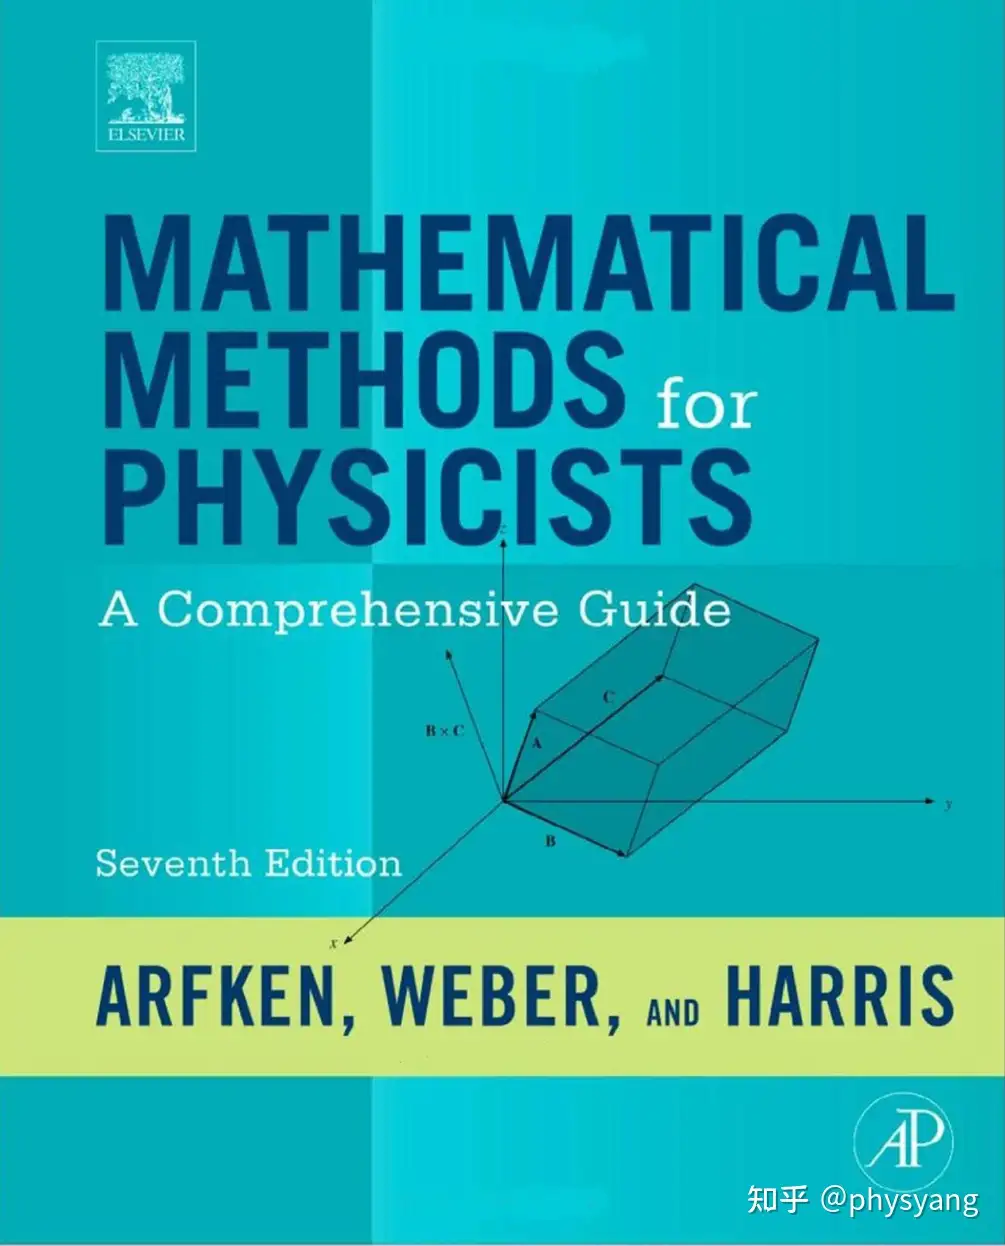 物理专业书库模板（2）：数学物理书籍推荐、书单介绍（包含数学物理 